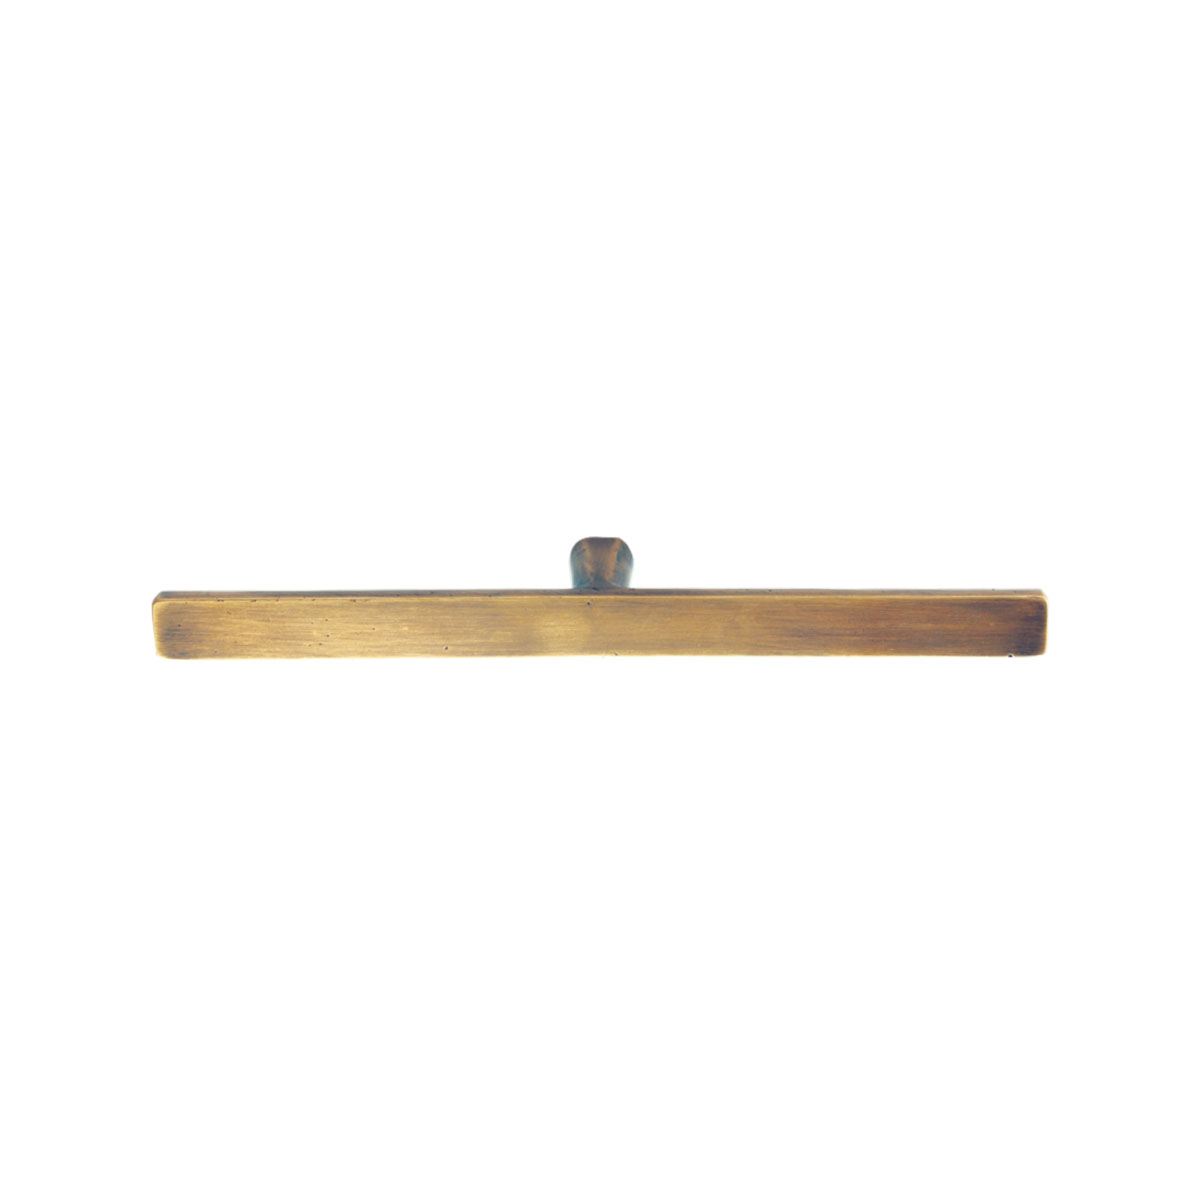 Solid Bronze 8 inch Manhattan Drawer Pull